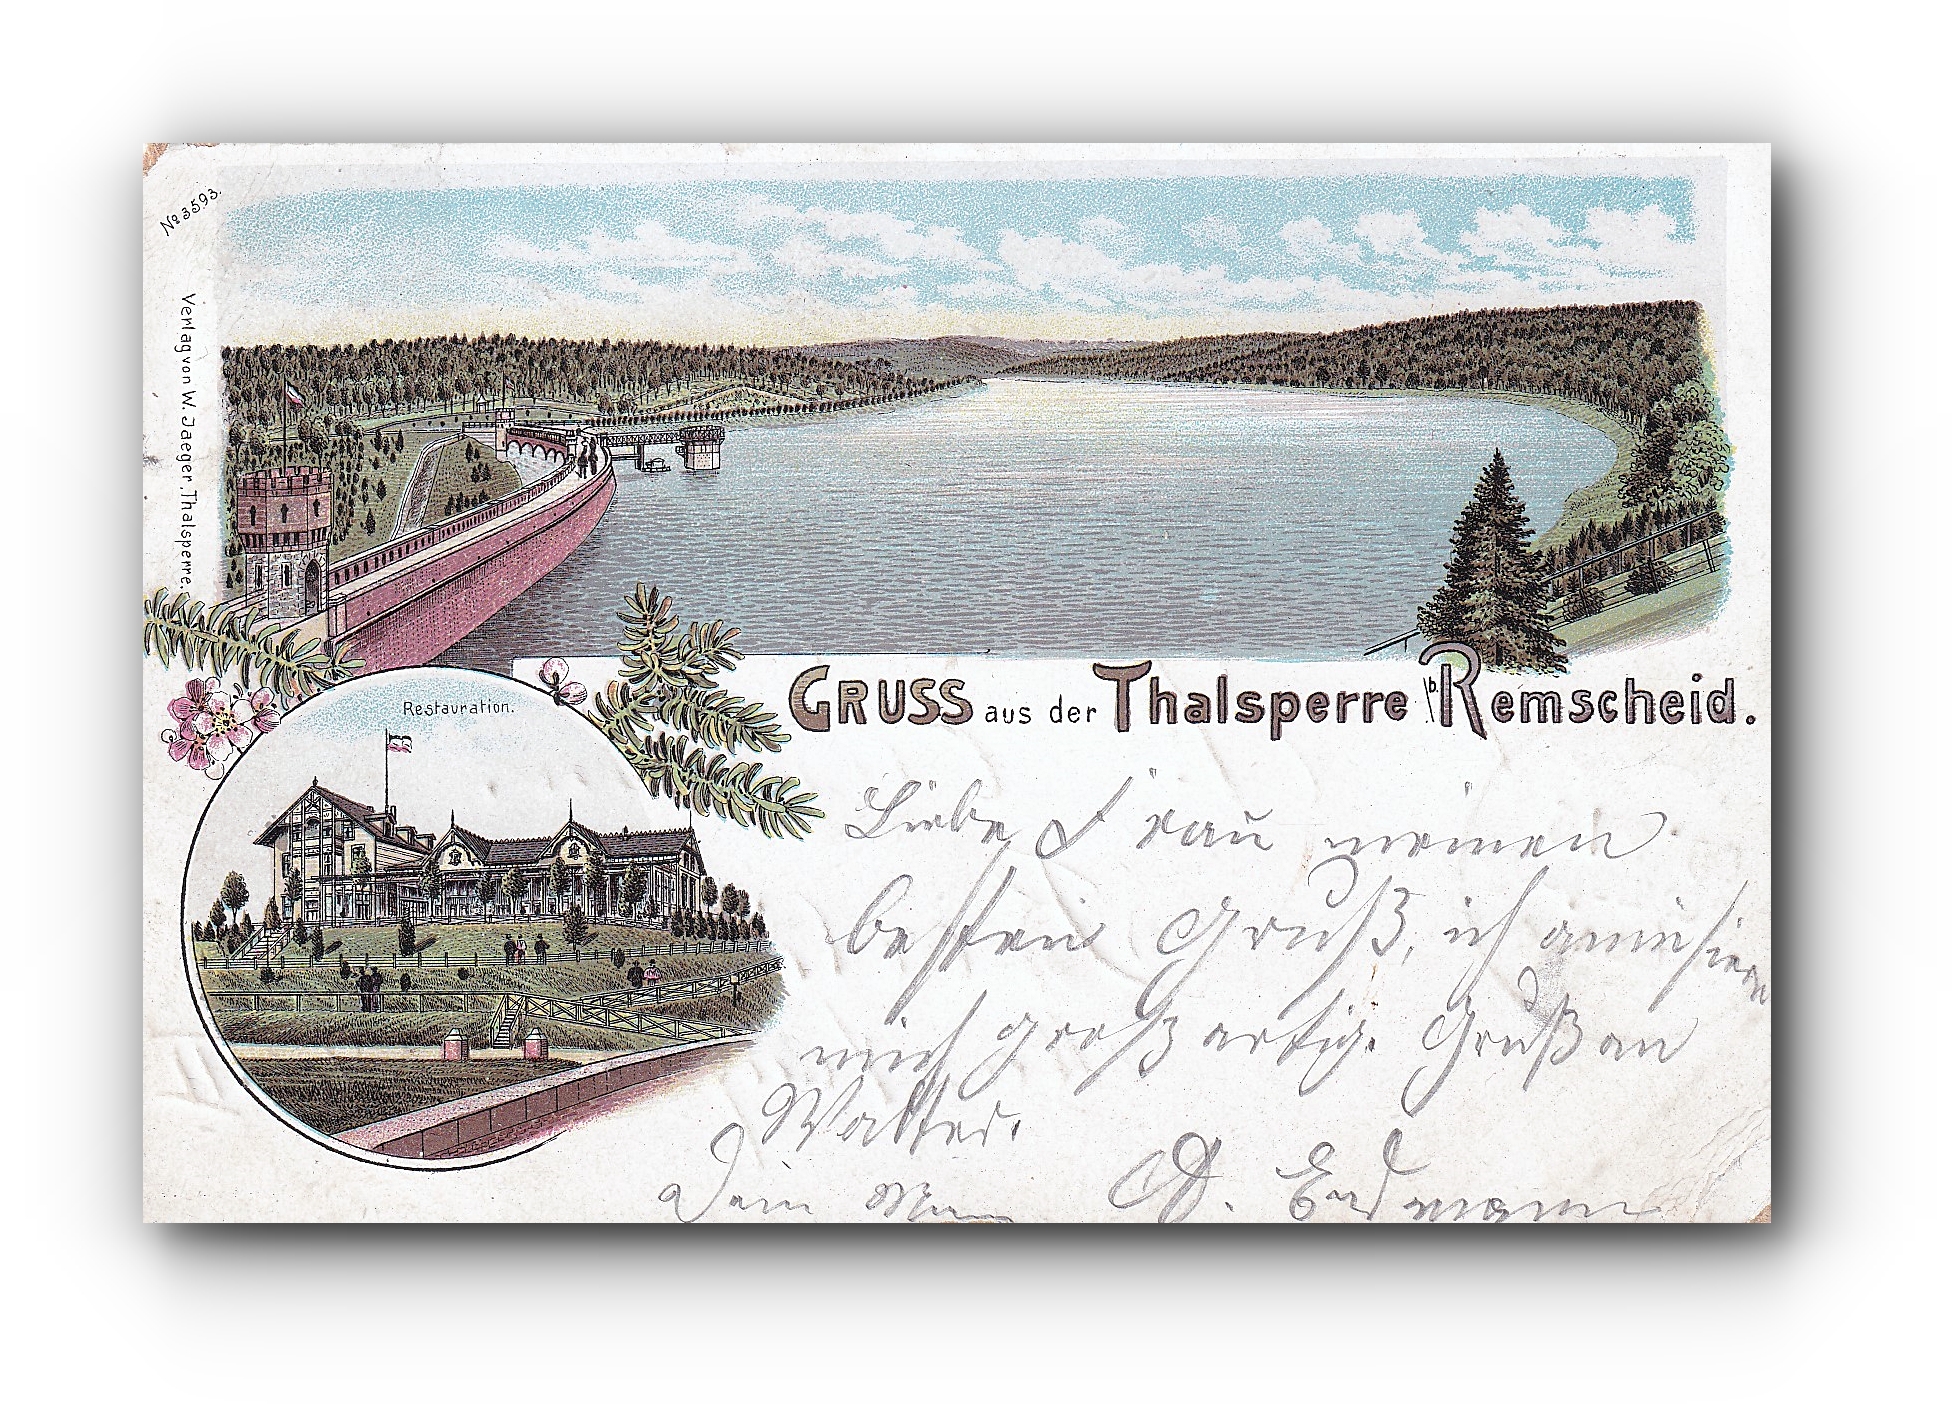 - Gruss aus der Thalsperre - REMSCHEID - 09.10.1900 -